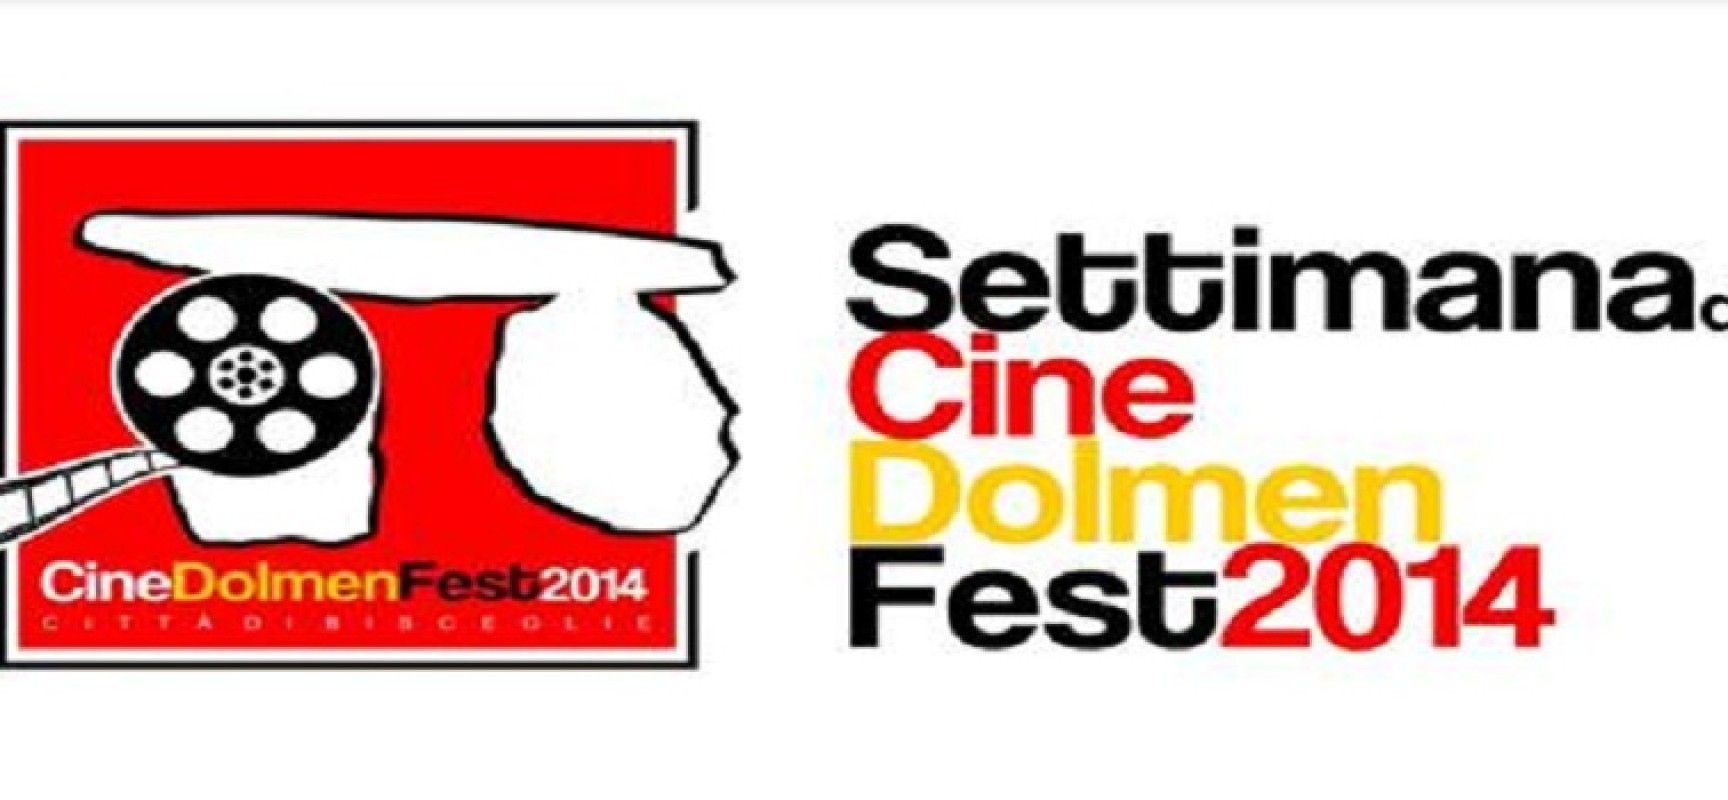 CineDolmenFest, la festa del cast del film “La Scelta” è stata anticipata a Martedi 29 Luglio